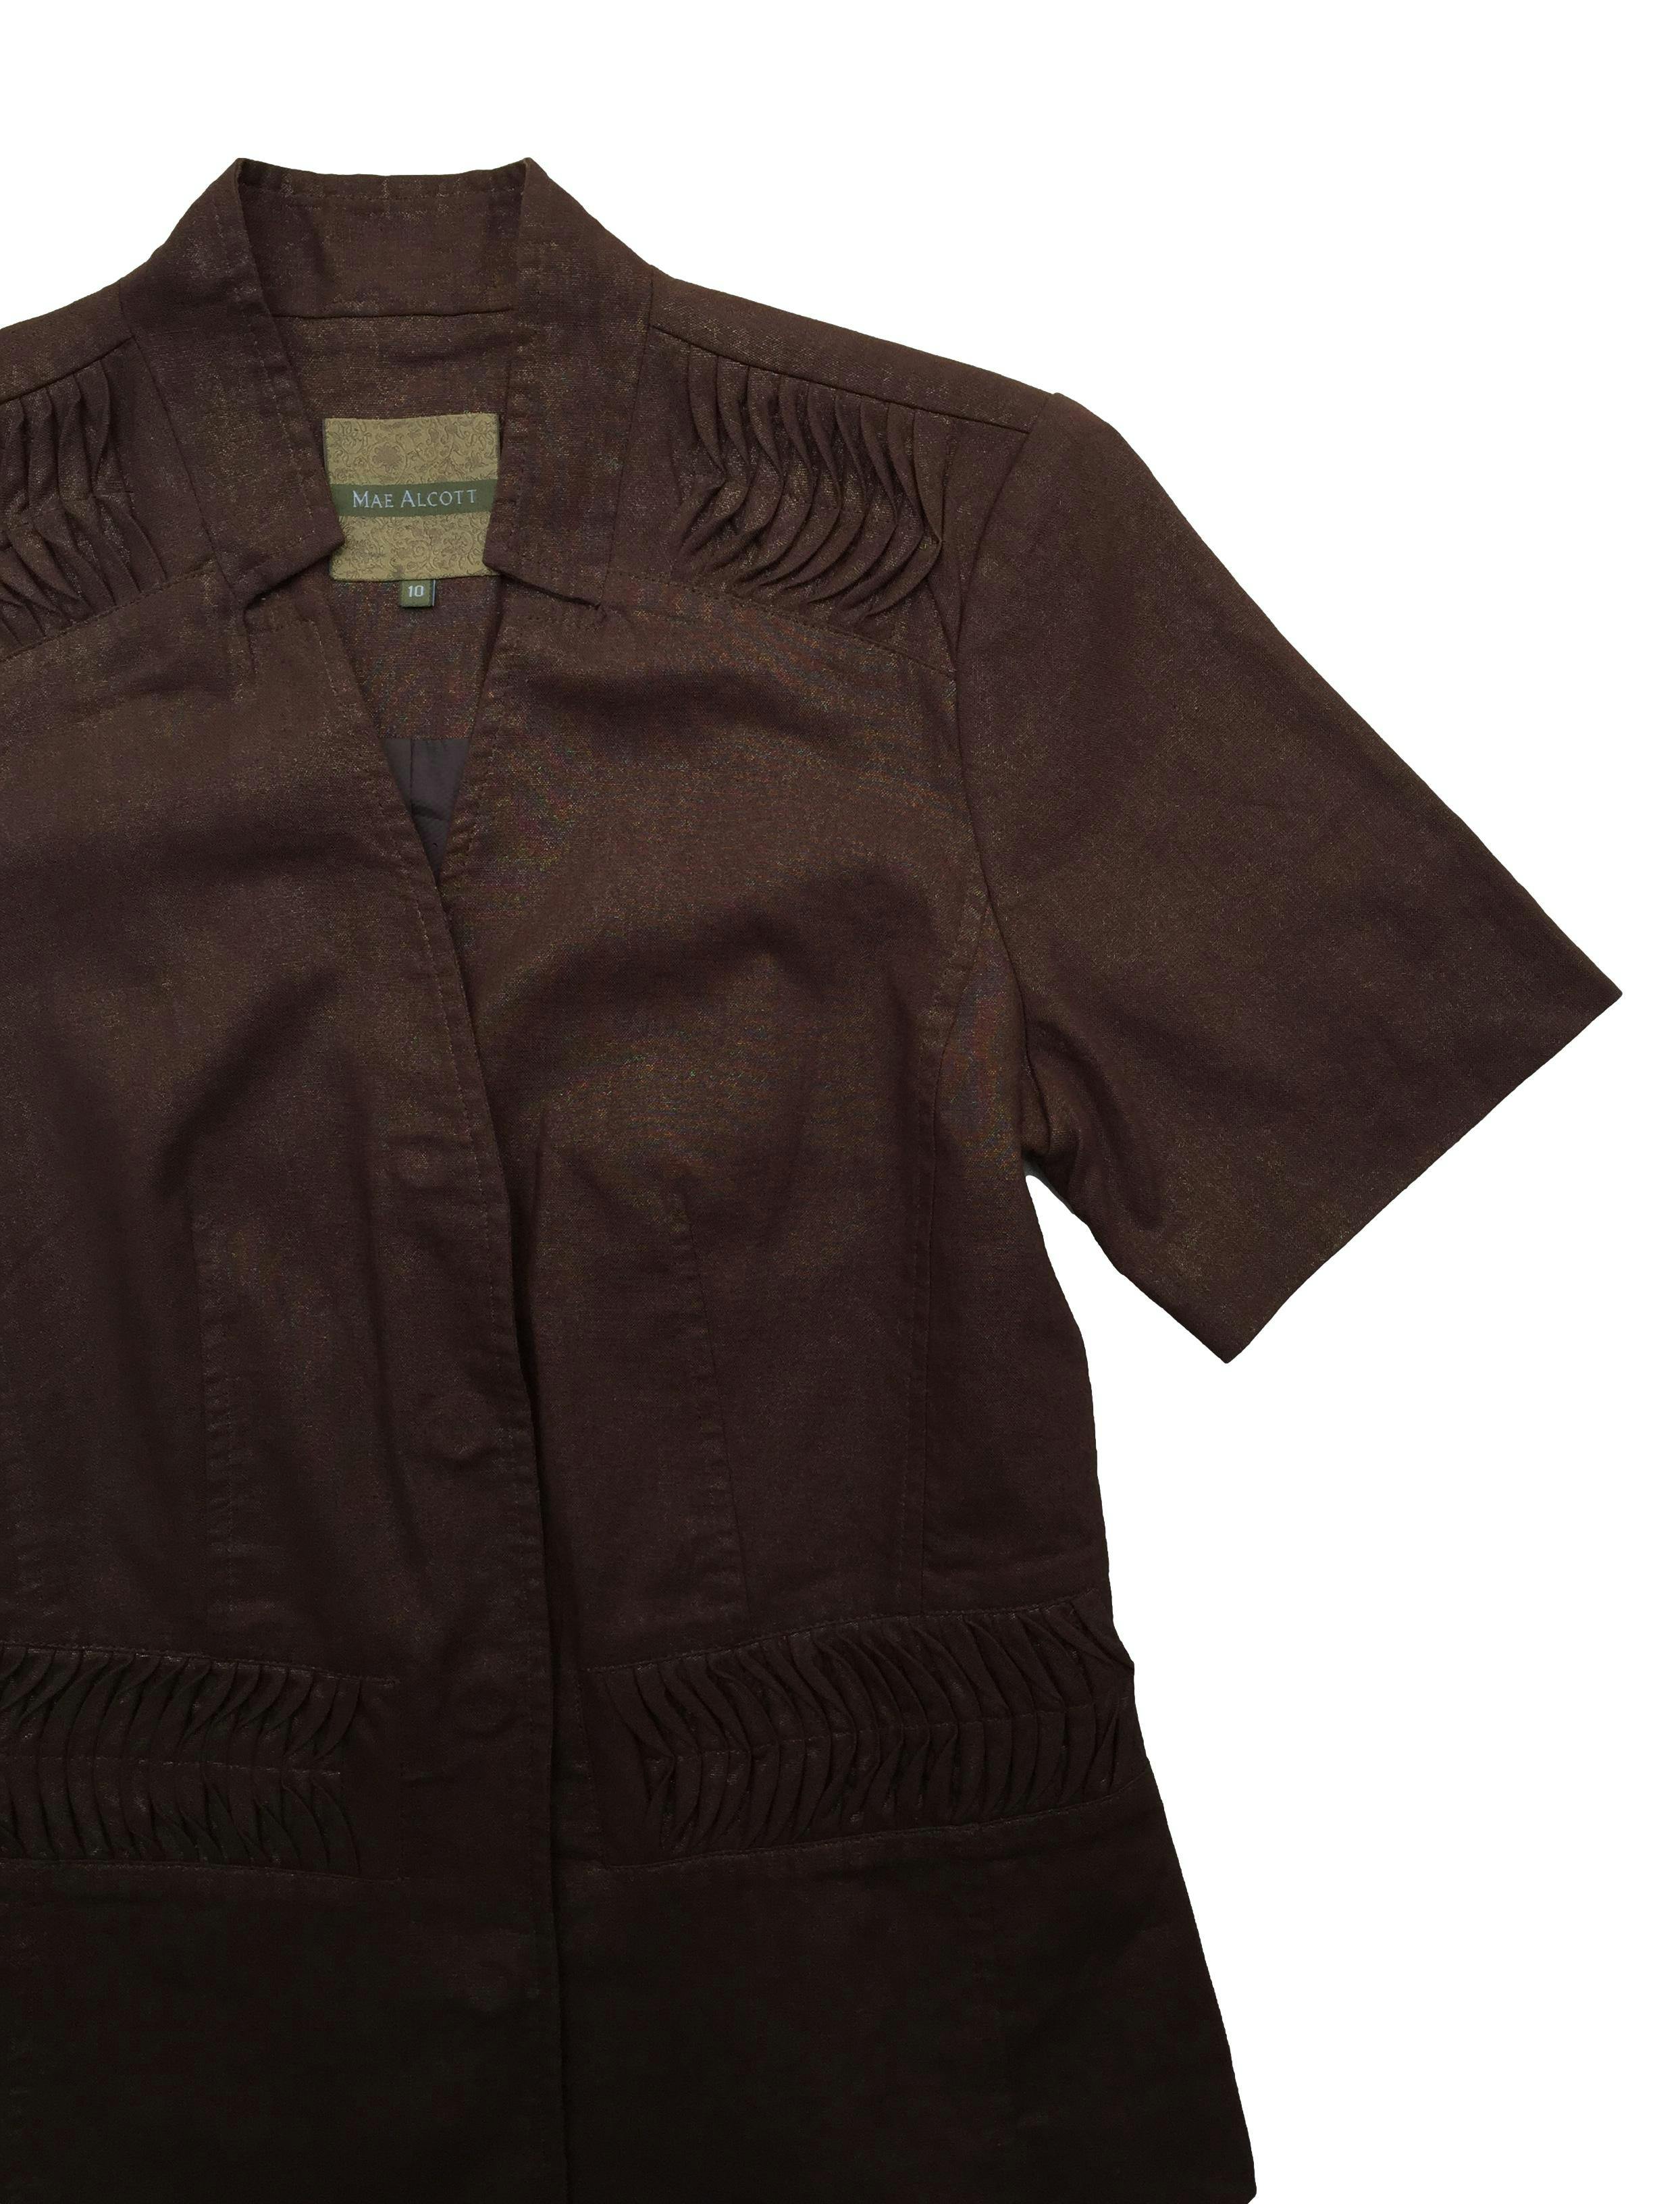 Blazer Mae Alcott 55%lino marrón con hilos metálicos, forro, hombreras, costuras drapeadas y broches. Busto 100cm, Largo 60cm.